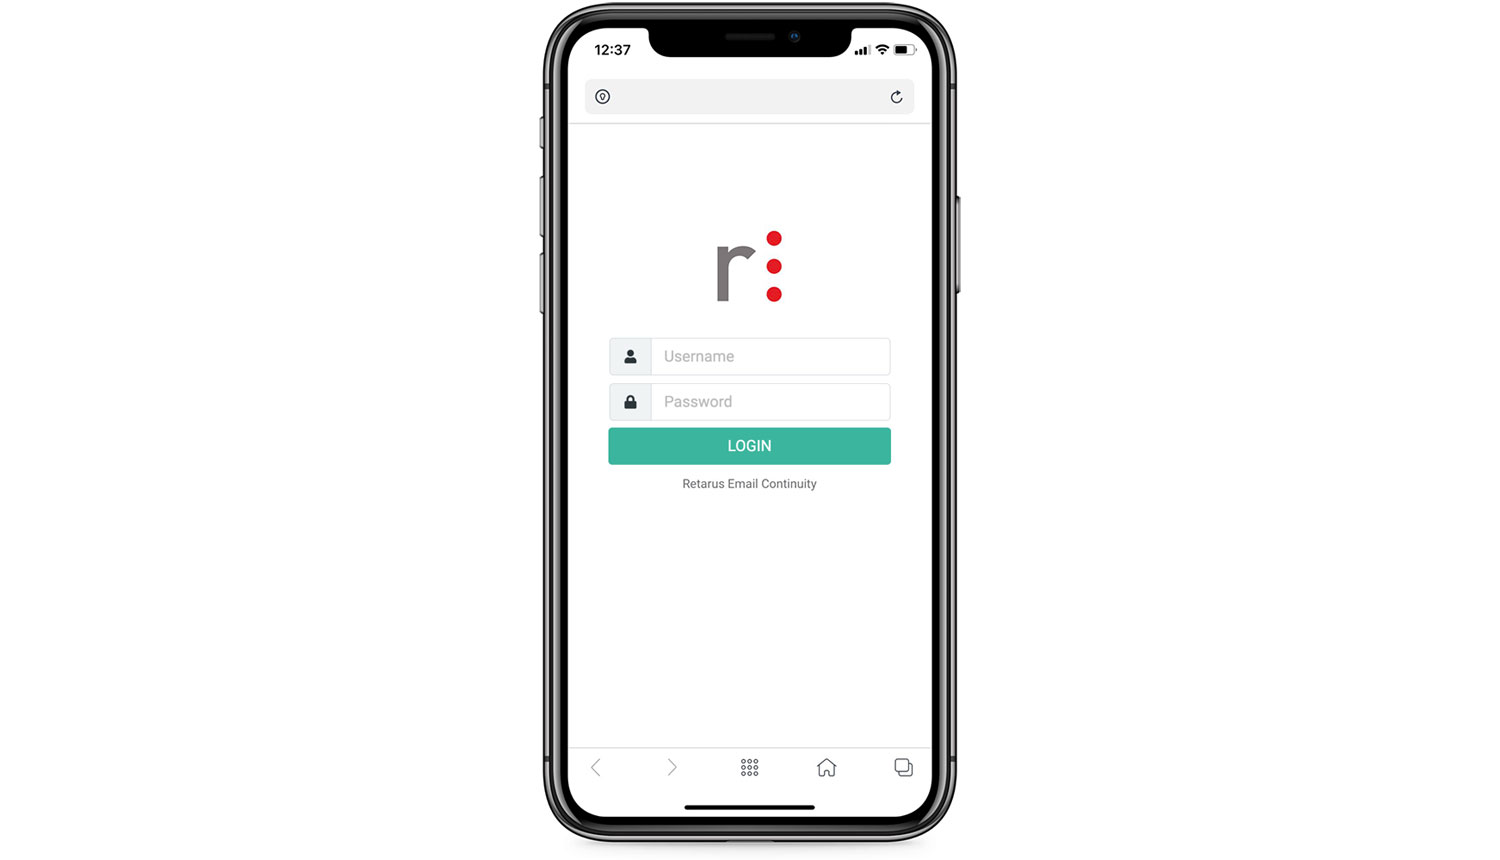 Login - Retarus Email Continuity Mobile UI